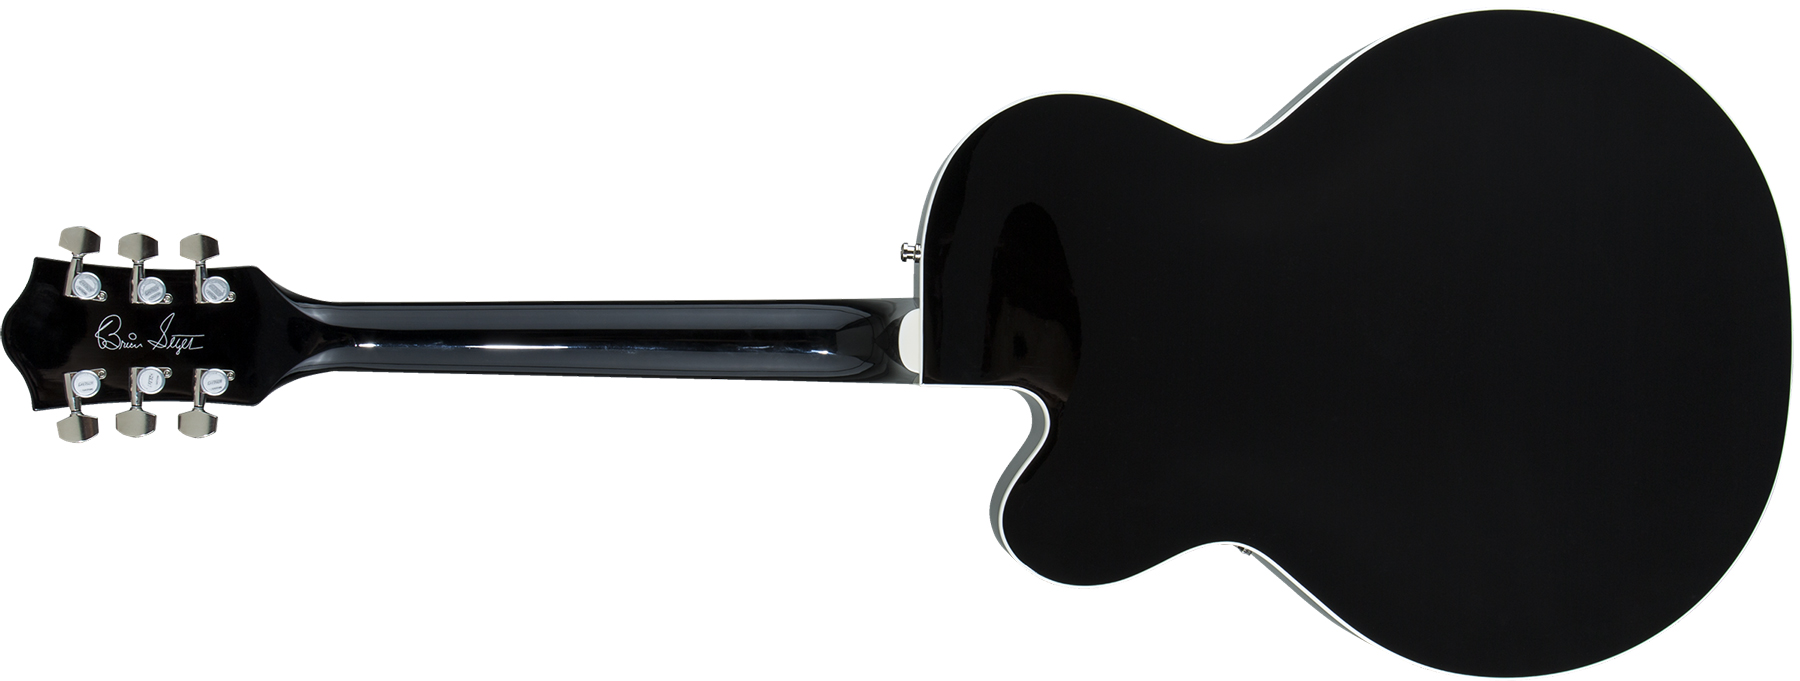 Gretsch Brian Setzer G6120t-bsnsh Nashville Japon Signature Bigsby Eb - Black Lacquer - Guitare Électrique 1/2 Caisse - Variation 1